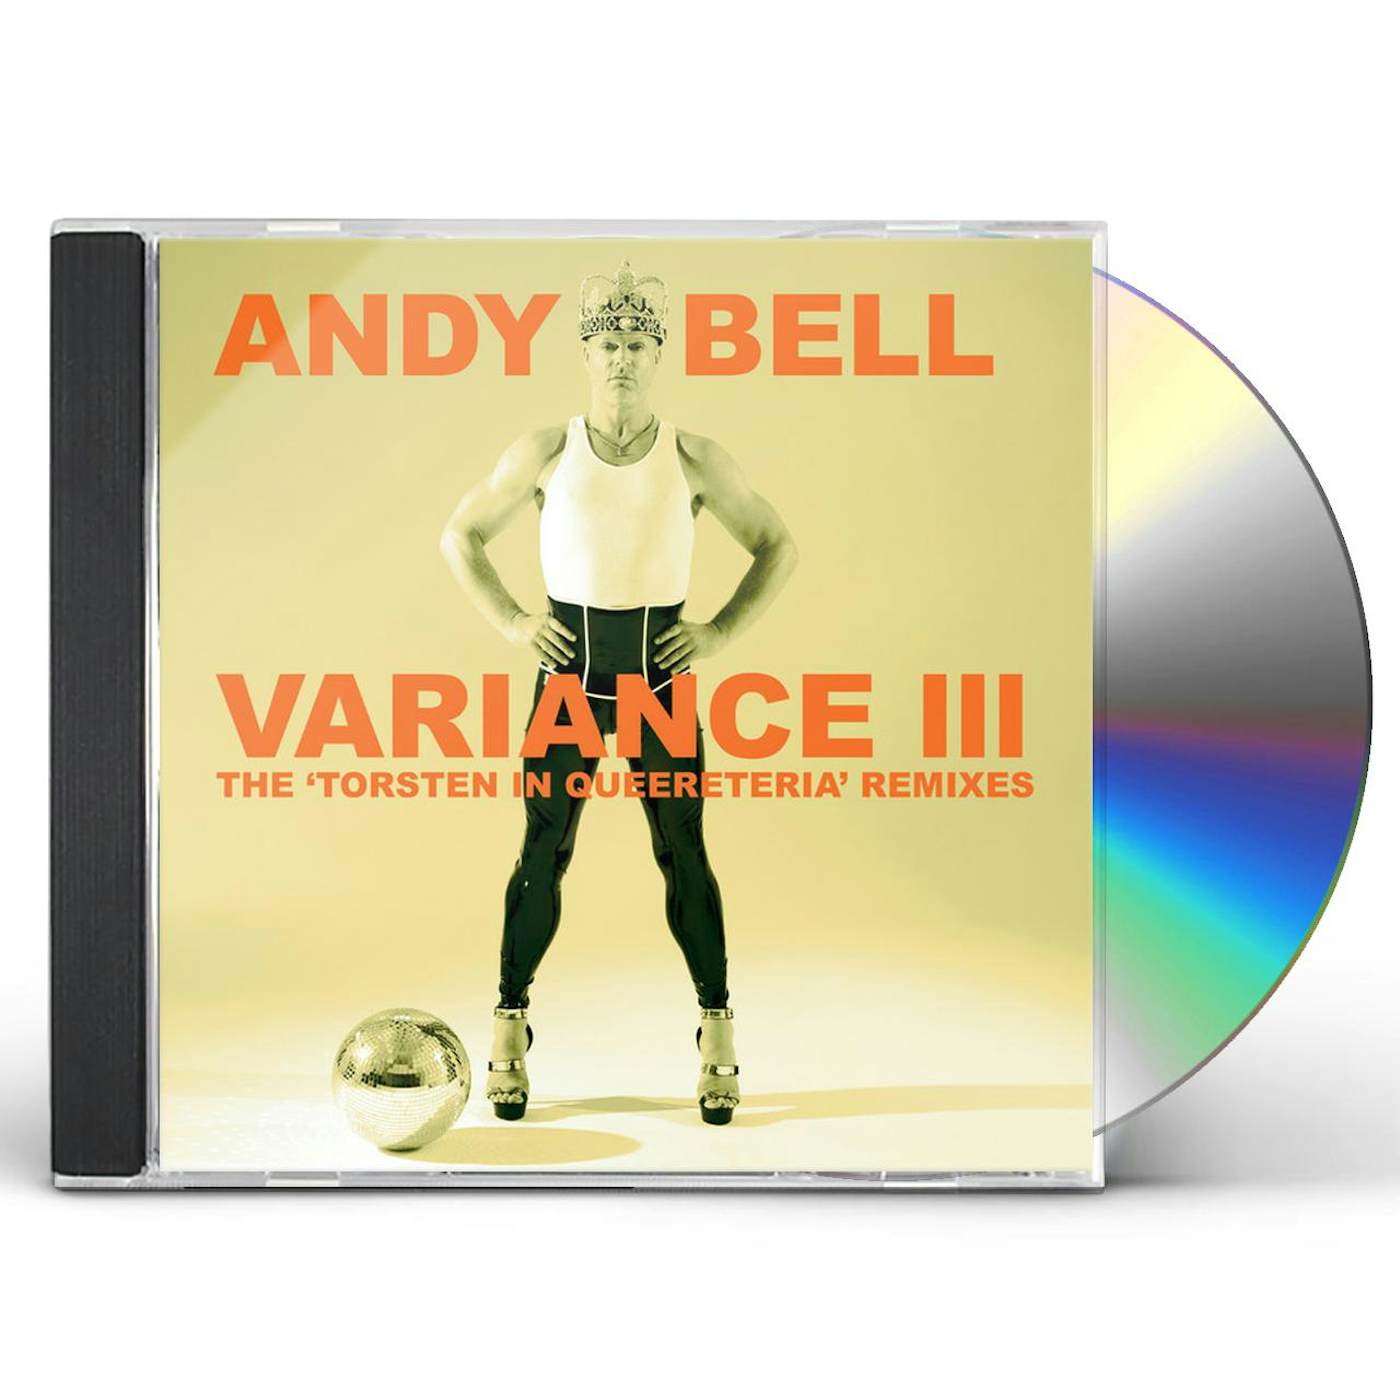 Andy Bell VARIANCE III: THE TORSTEN IN QUEERETERIA REMIXES CD